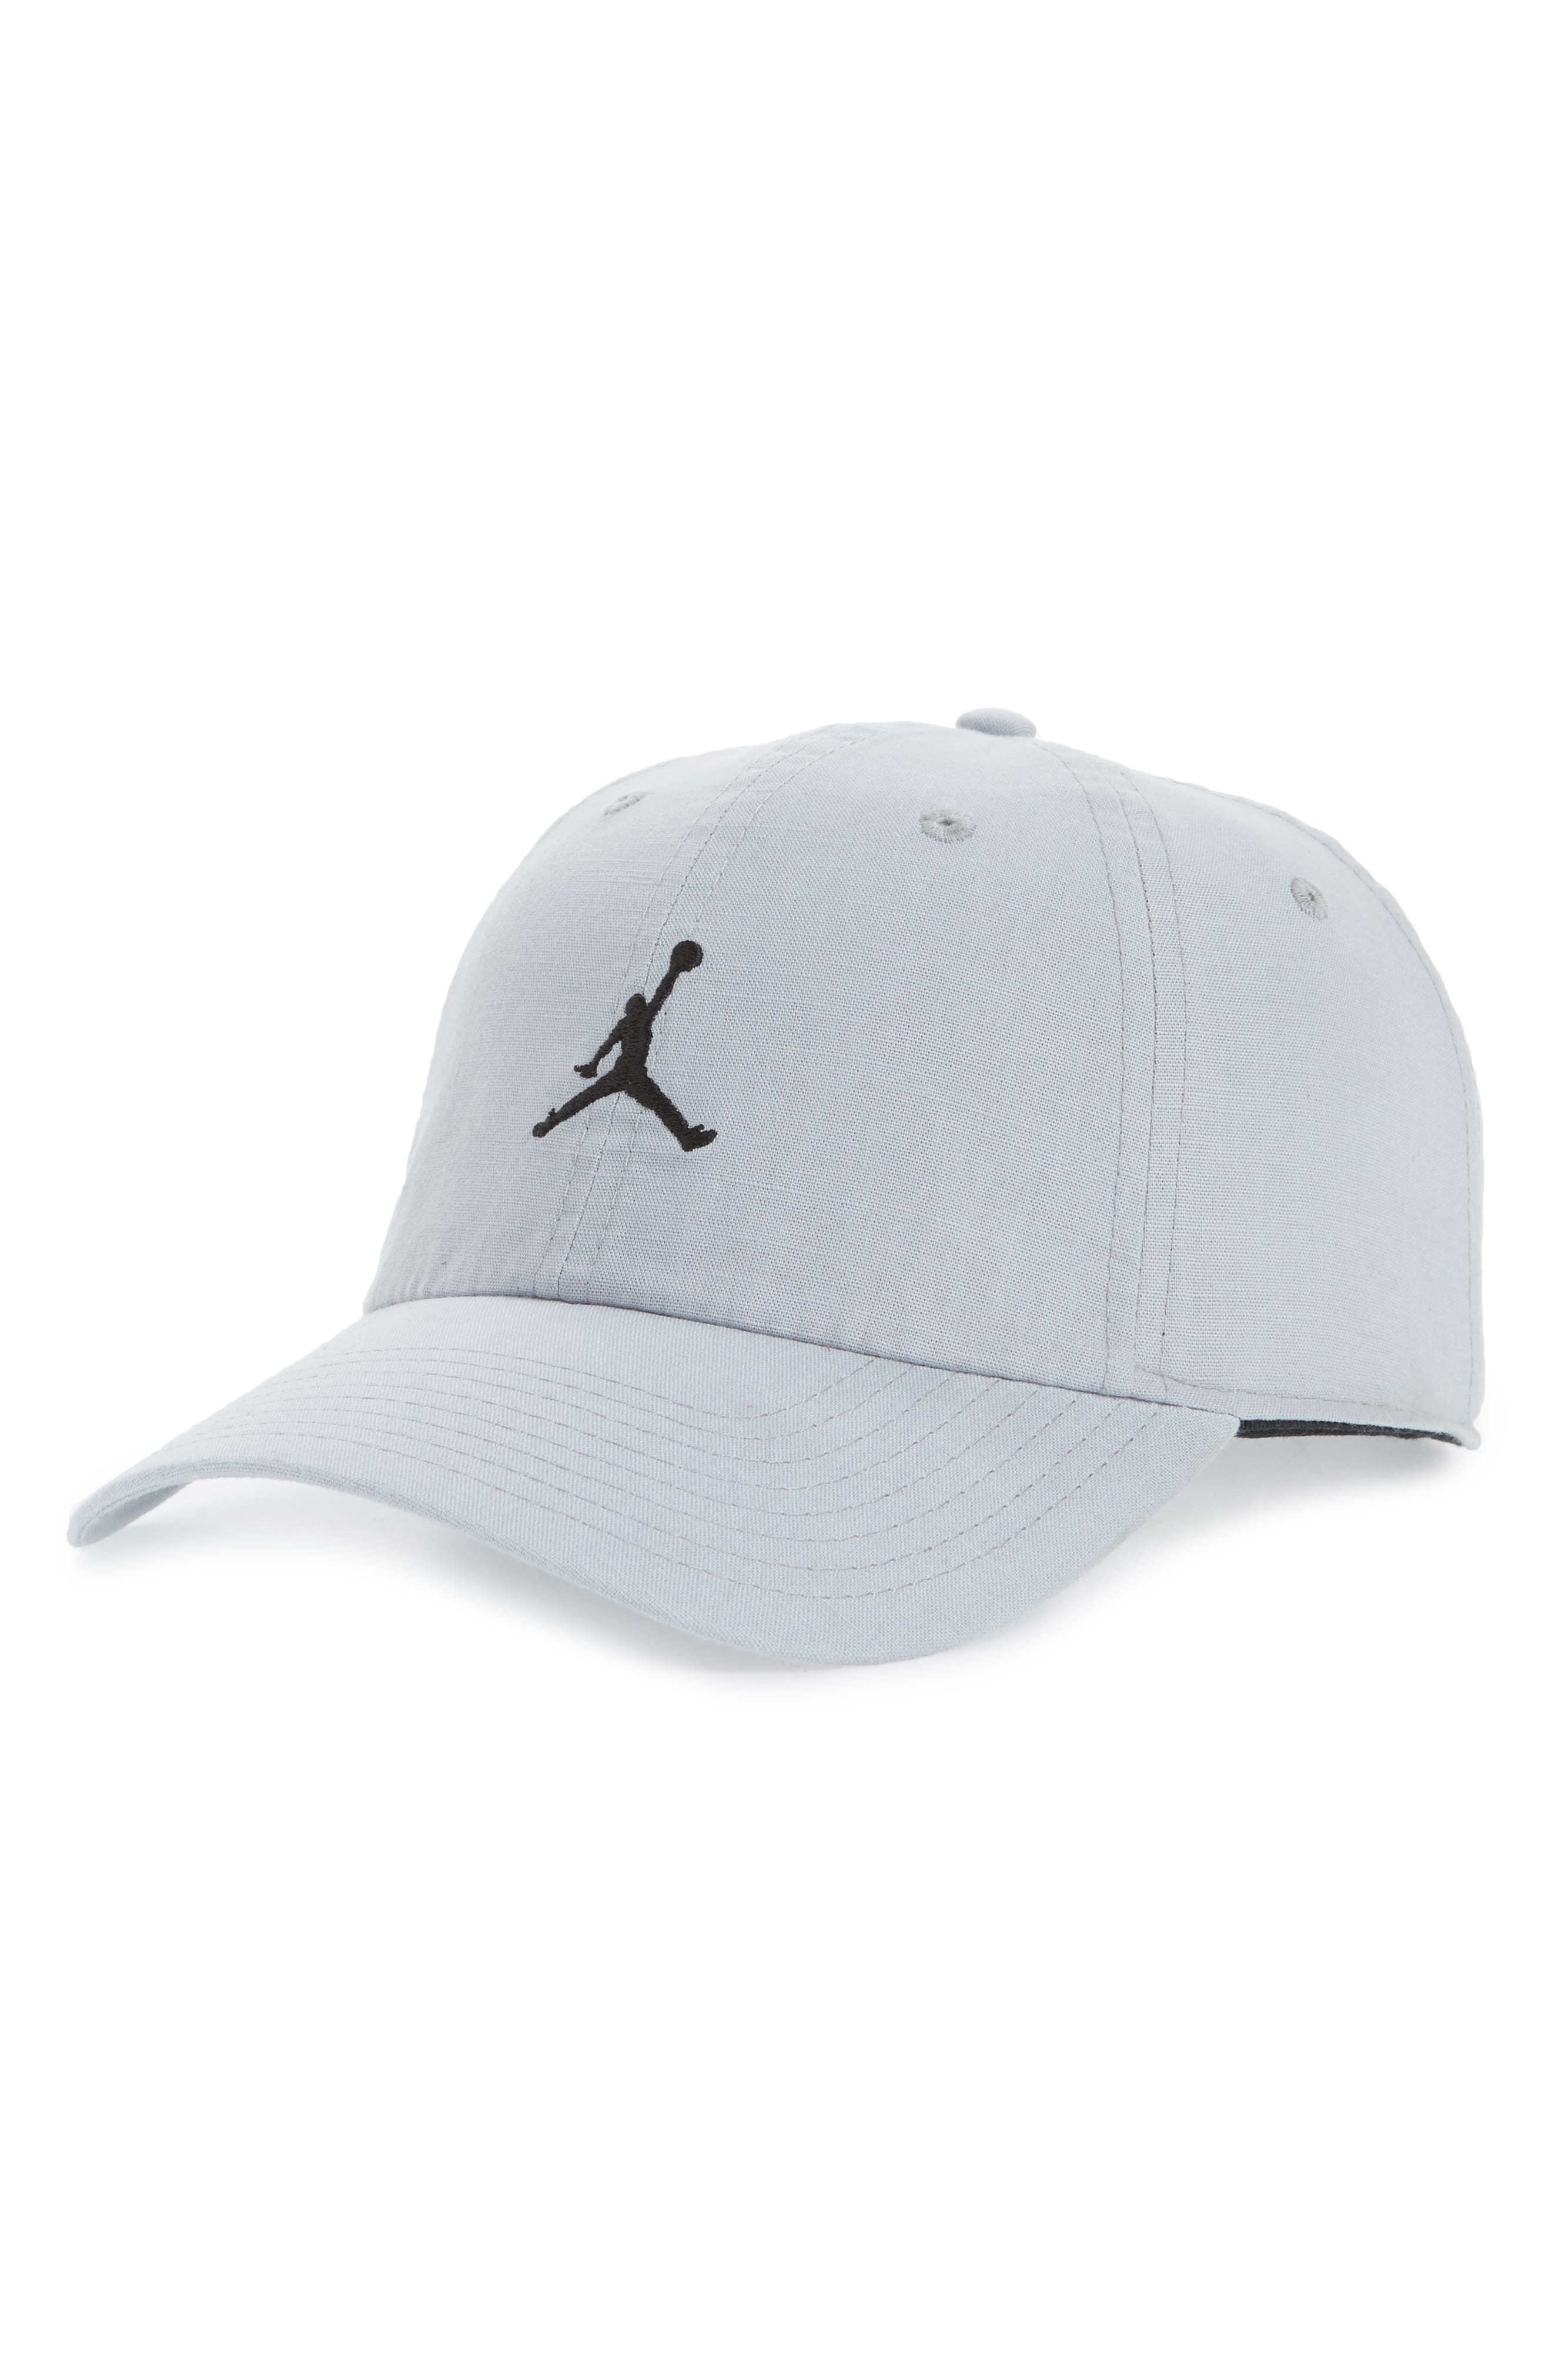 jumpman golf hat